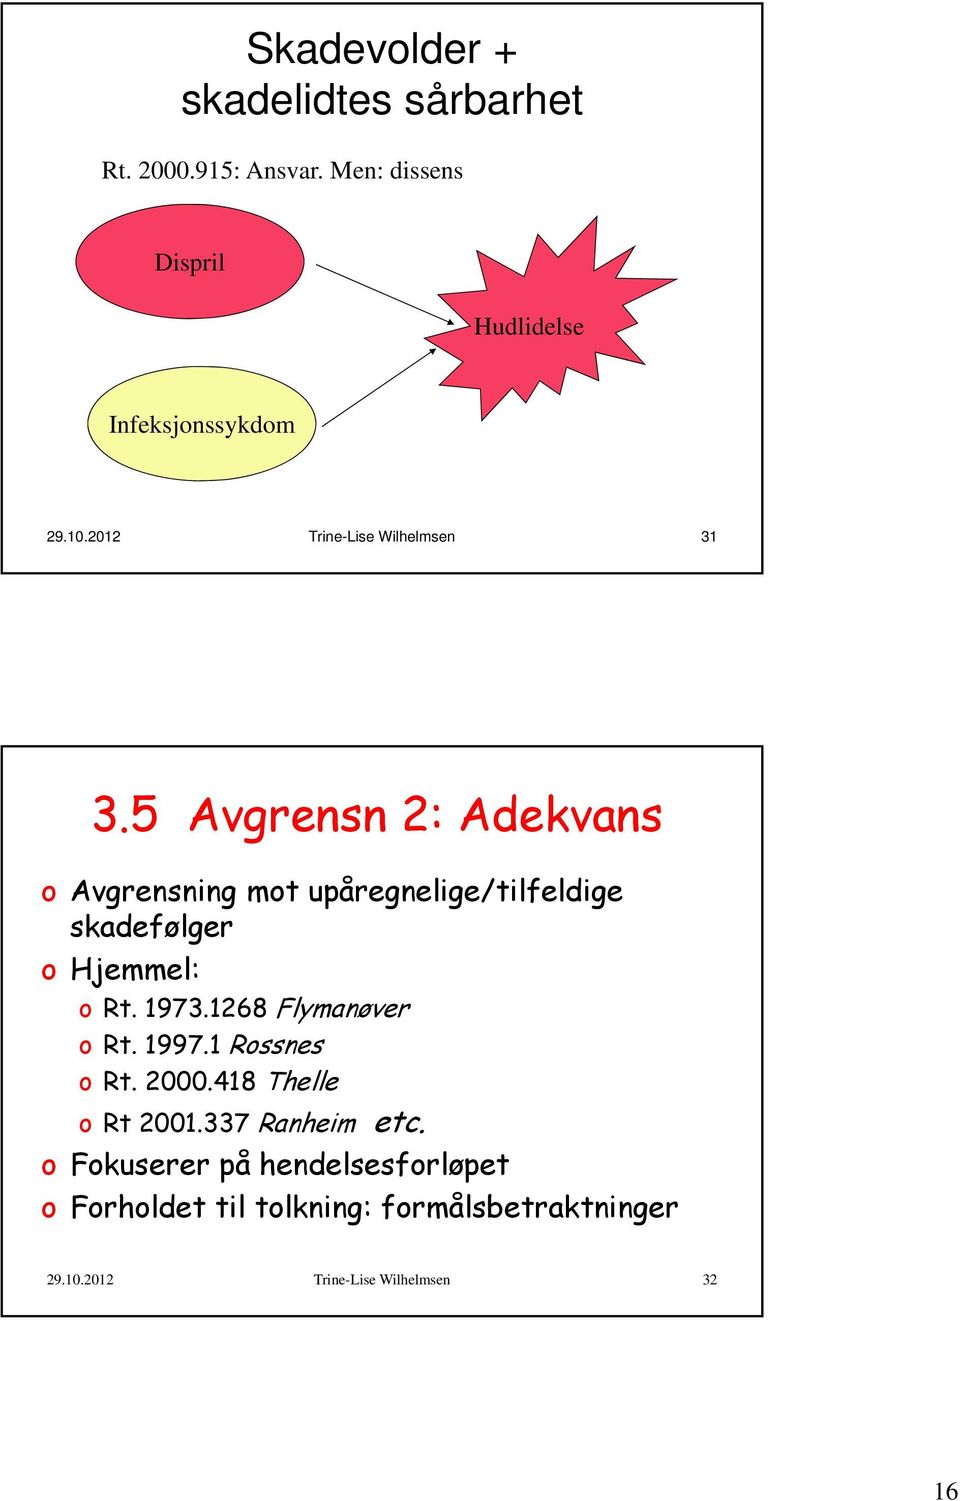 5 Avgrensn 2: Adekvans o Avgrensning mot upåregnelige/tilfeldige skadefølger o Hjemmel: o Rt. 1973.